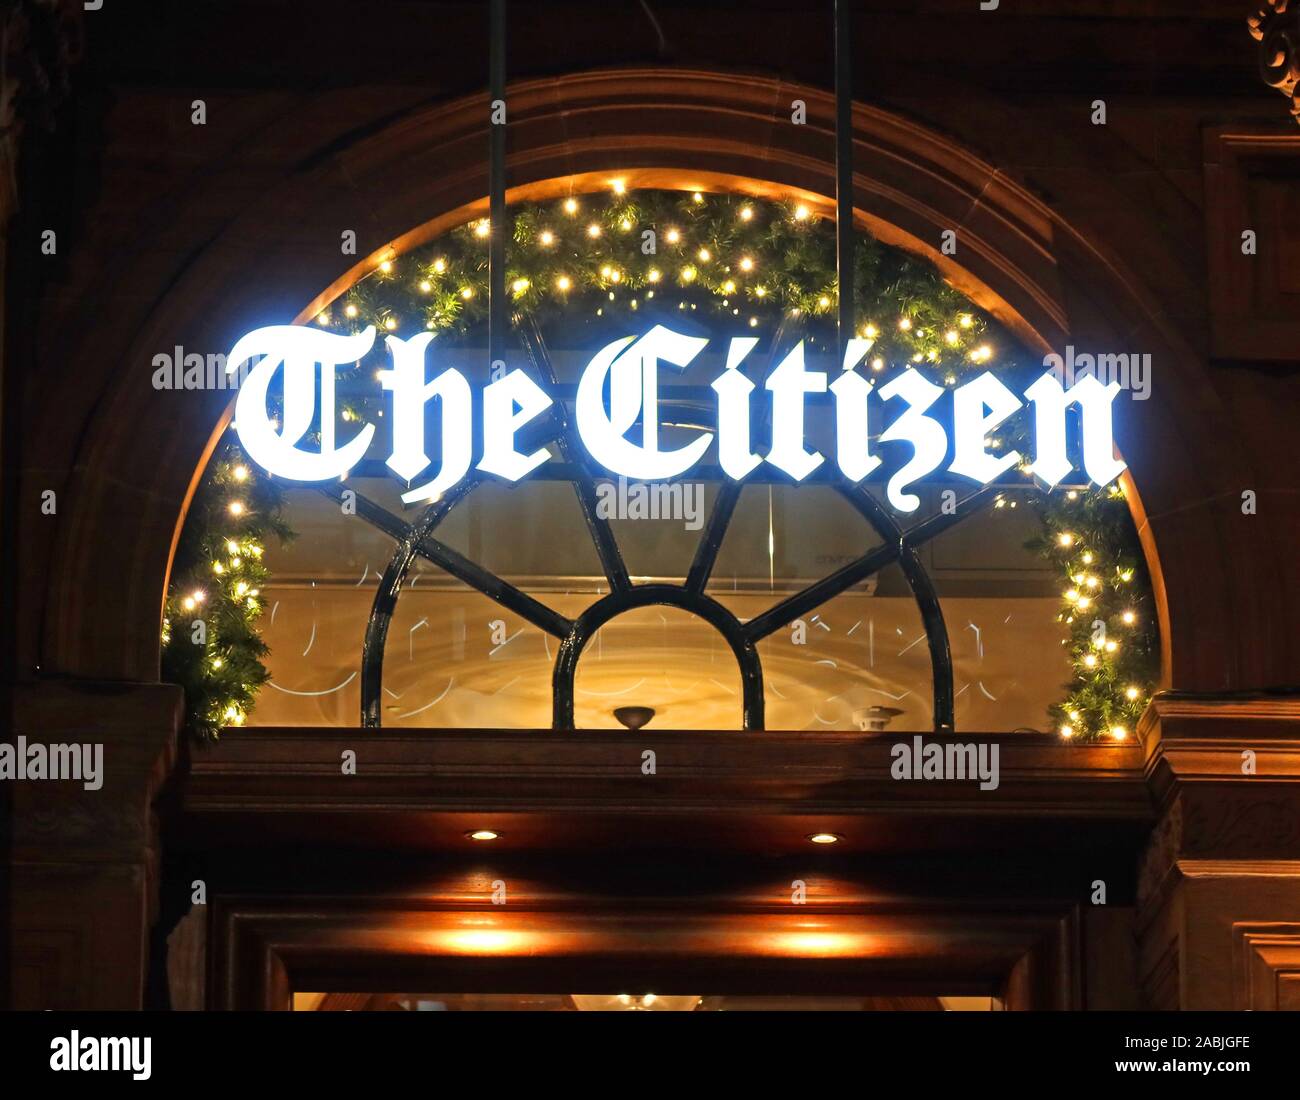 The Citizen, bar et salle à manger, vieux bureaux du Glasgow Evening Citizen Journal, 24 St Vincent place, Glasgow, Écosse, Royaume-Uni, G1 2eu Banque D'Images